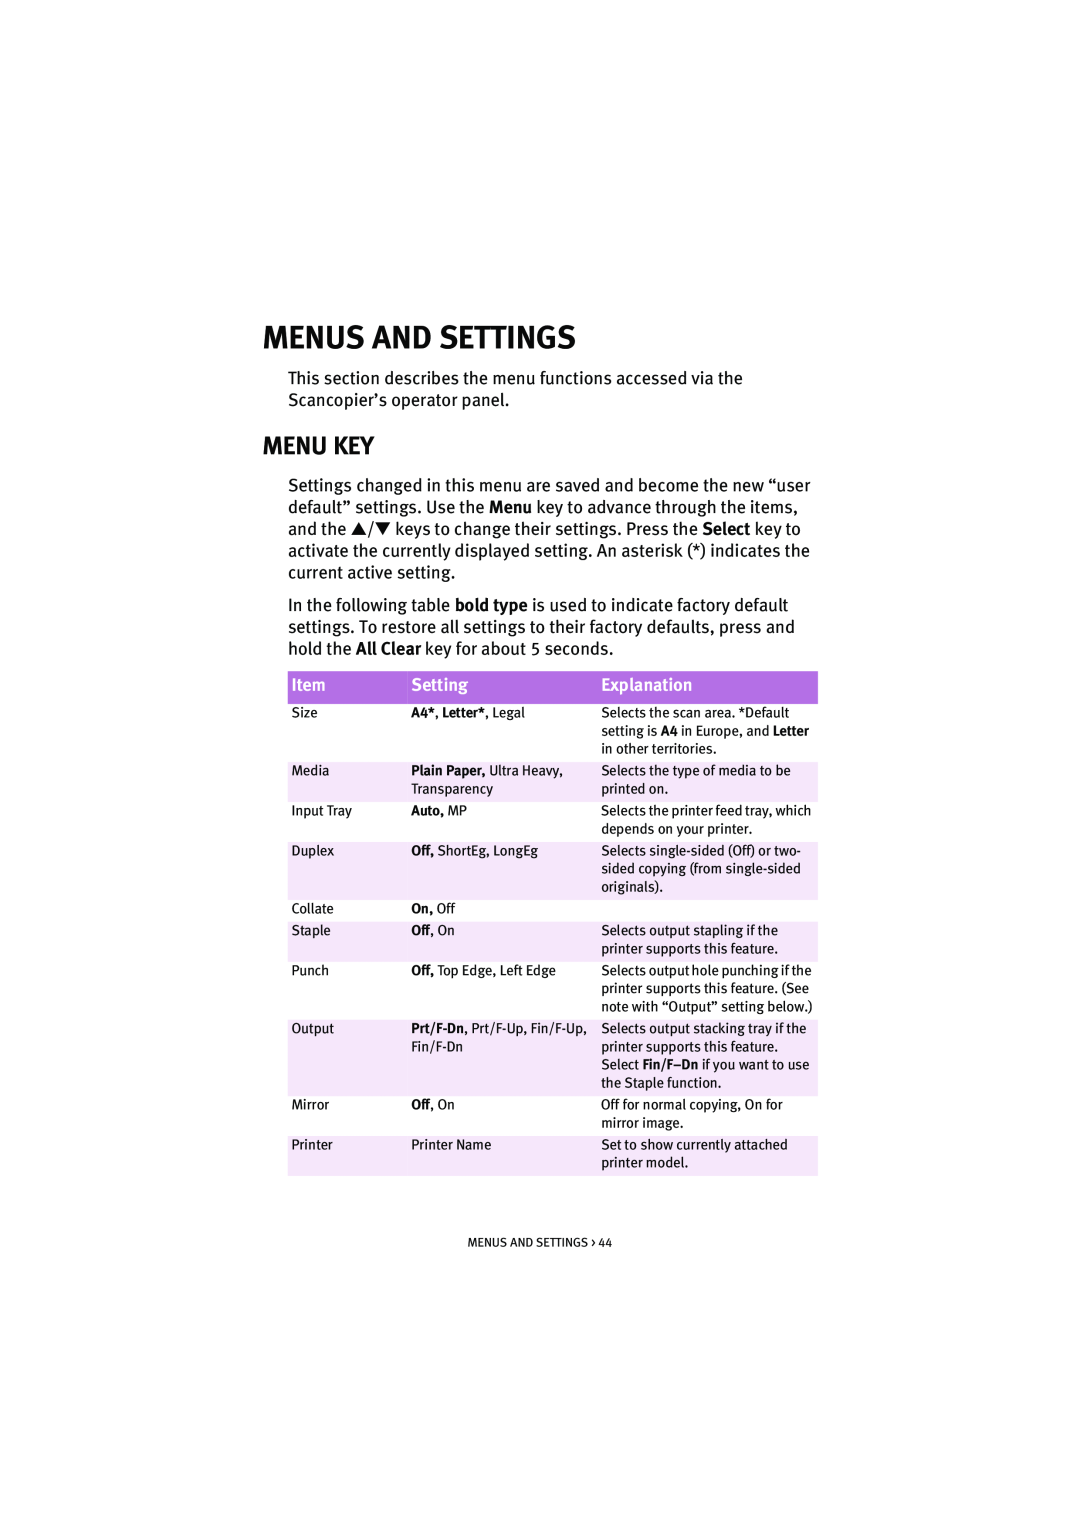 Oki S700 manual Menus And Settings, Menu Key, Explanation 